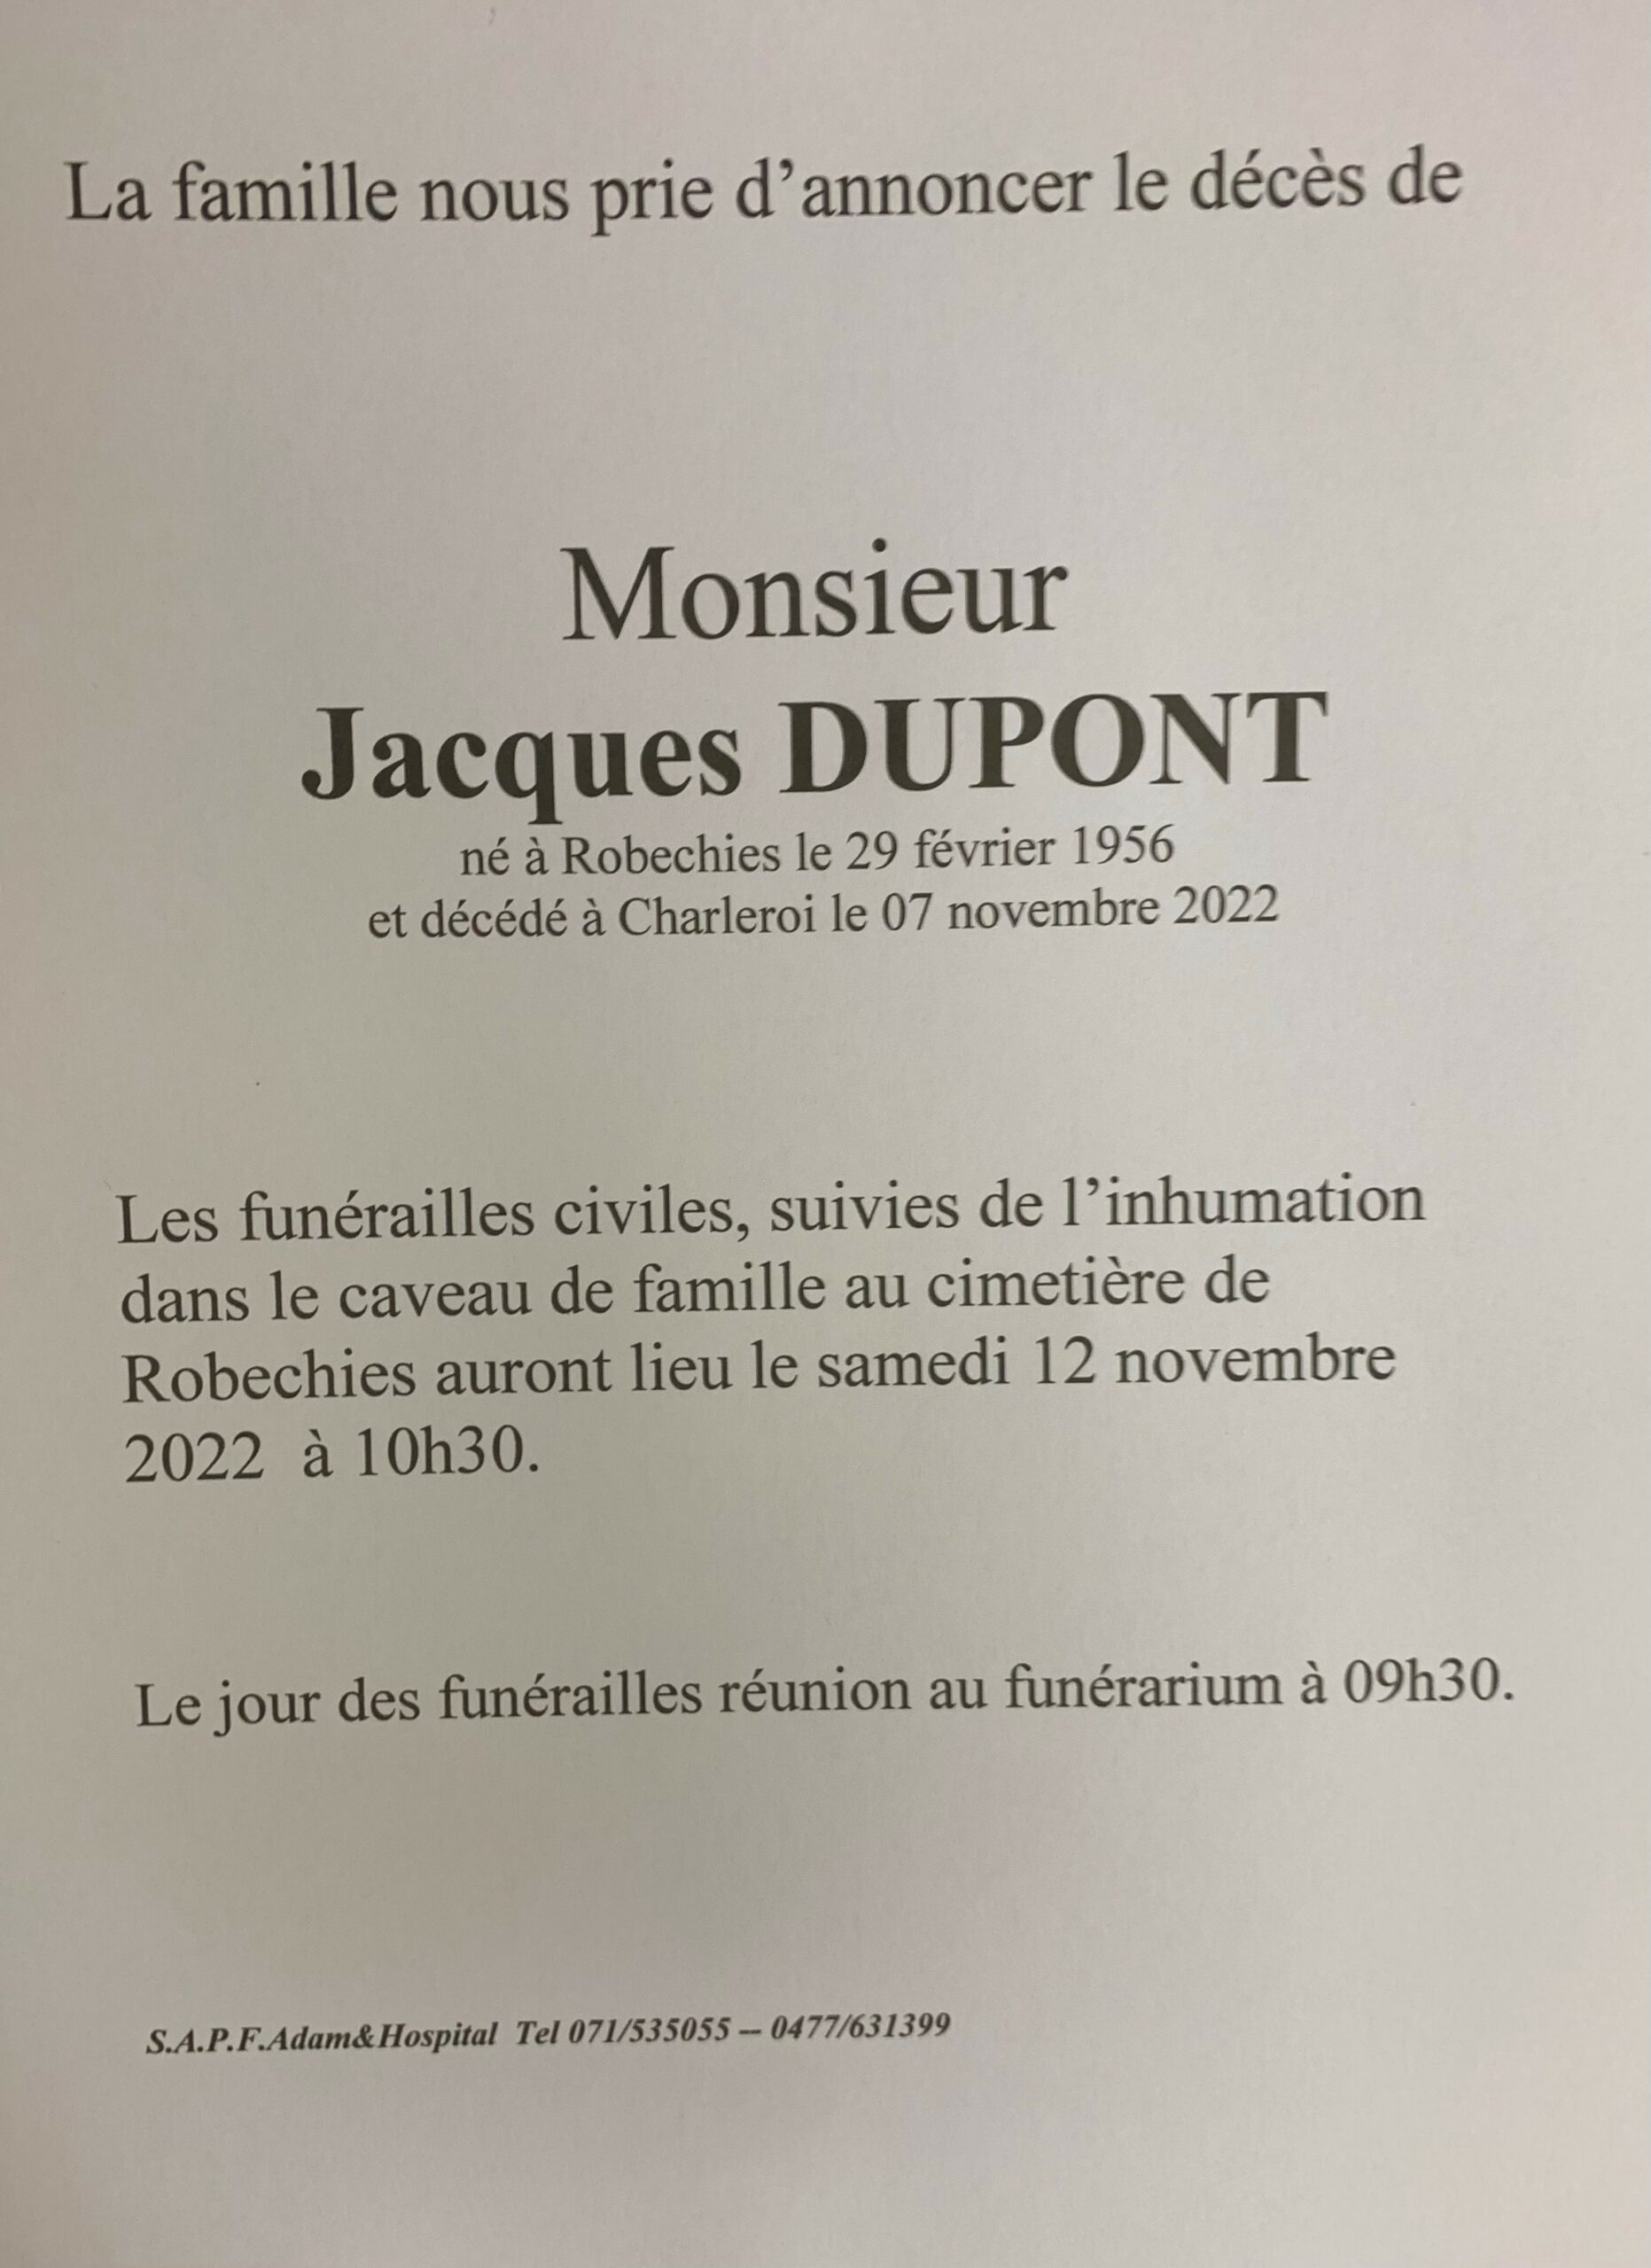 Monsieur Jacques DUPONT scaled | Funérailles Adam Hospital